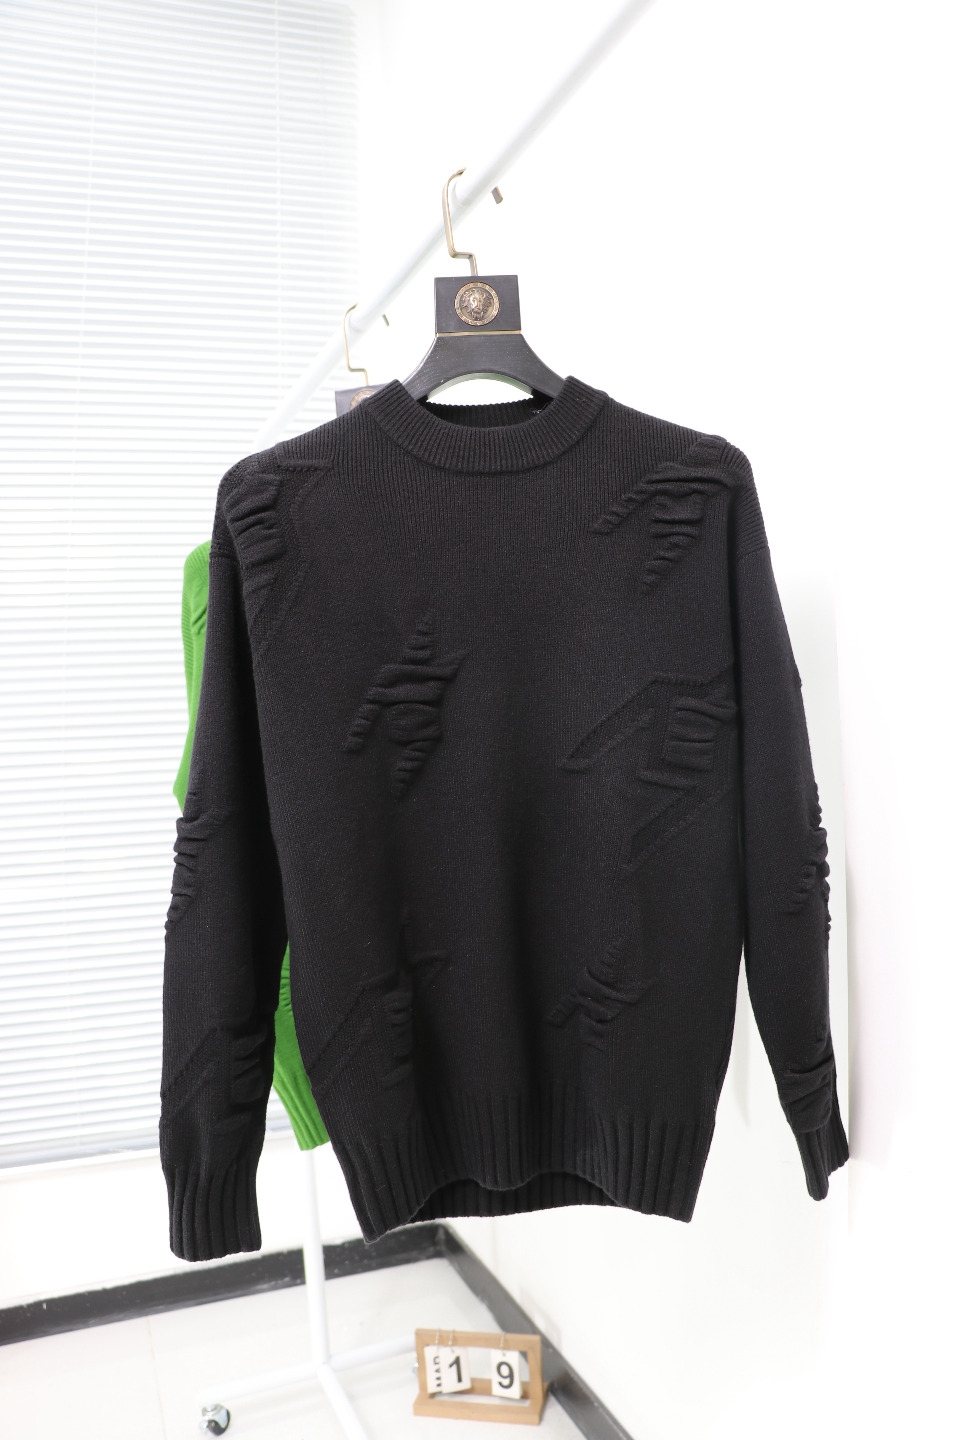 ジバンシィπｎ級品 GIVENCHY 新作シャツ 長袖セーター 柔らかくて暖かい トップス 快適 ブラック_1